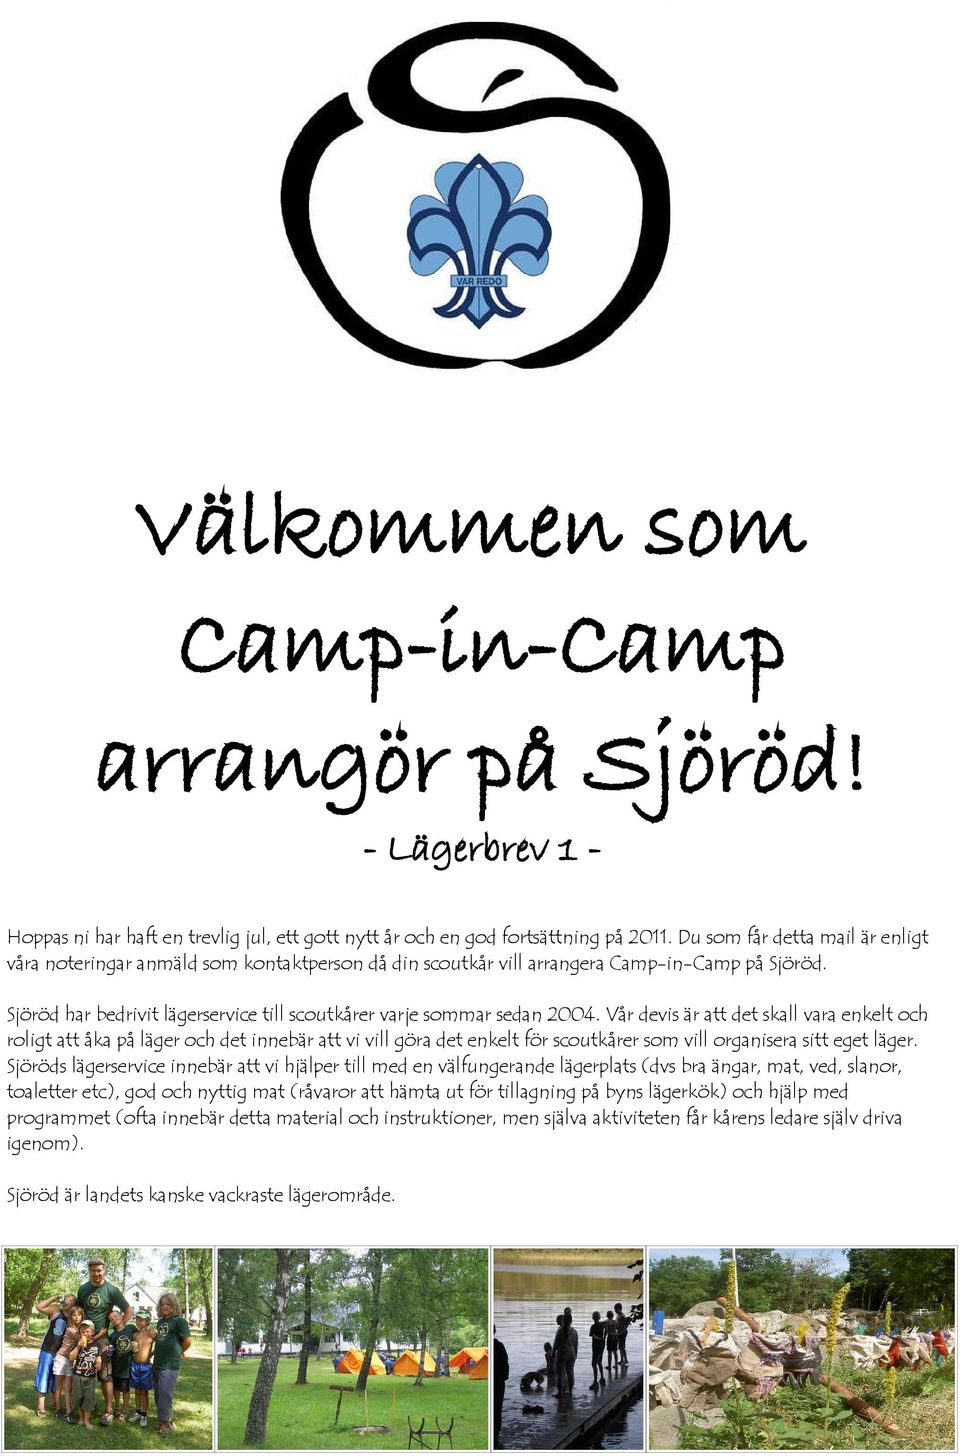 Sjöröd har bedrivit lägerservice till scoutkårer varje sommar sedan 2004.